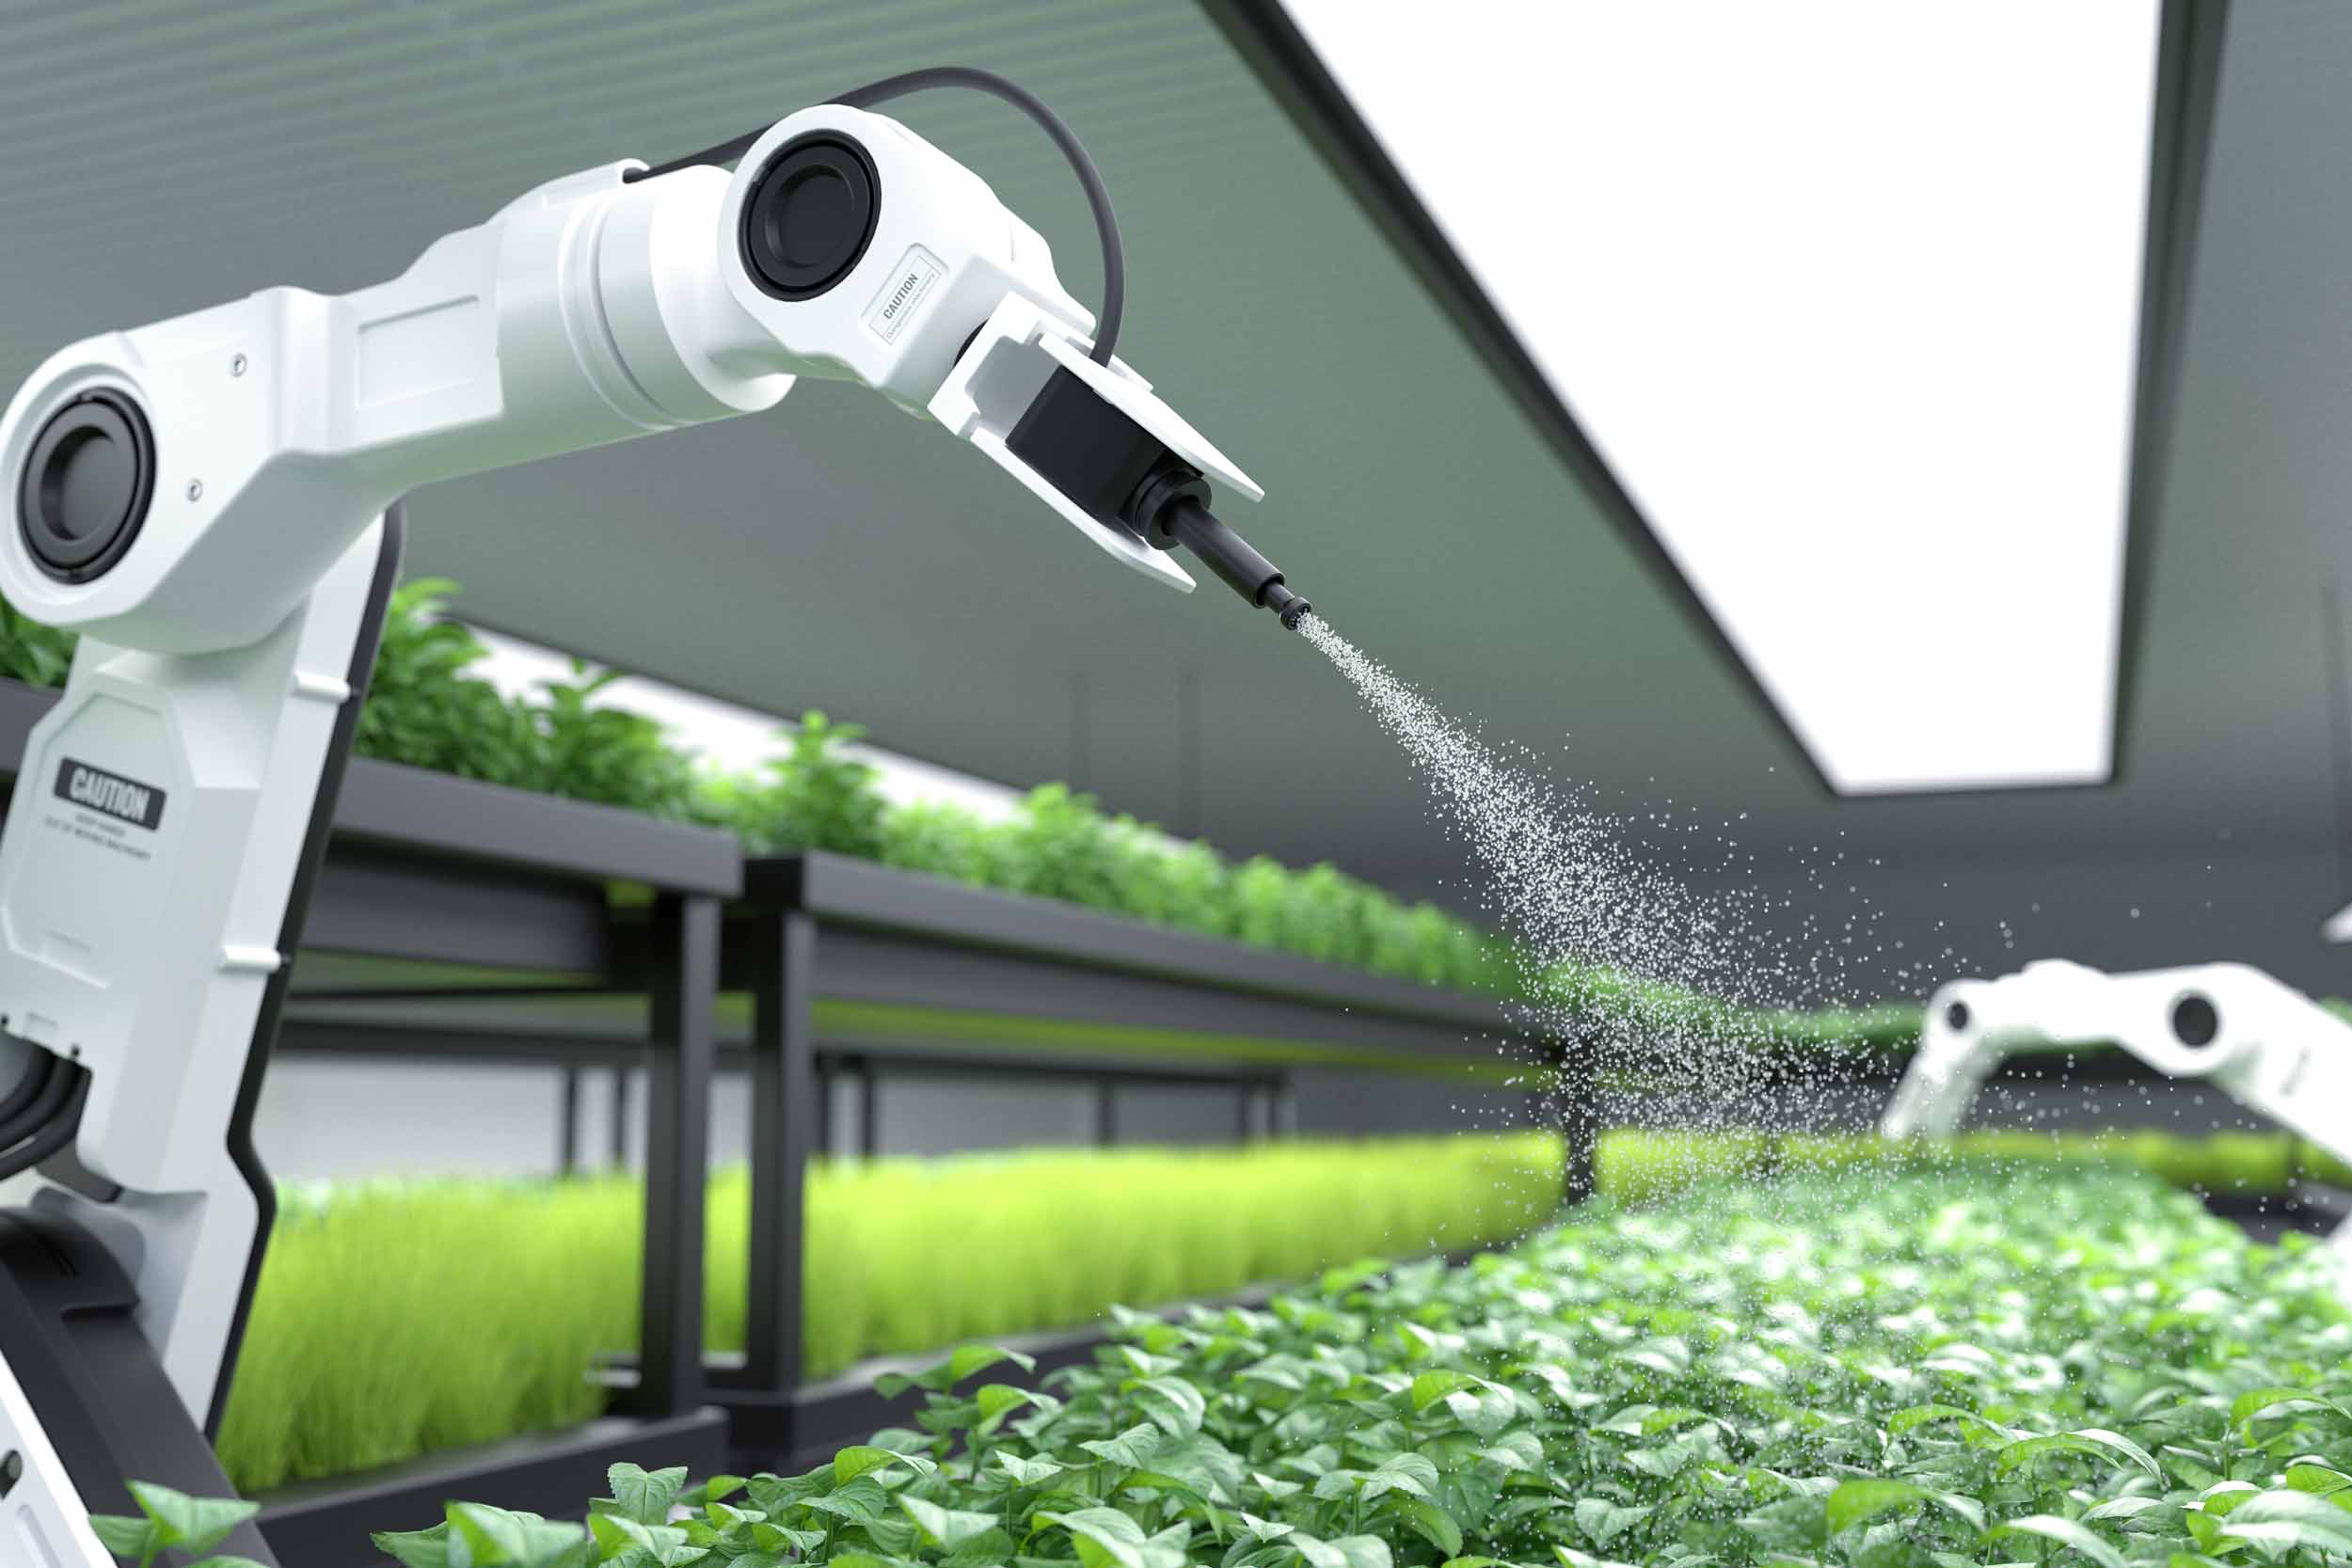 کاربرد هوش مصنوعی در صنعت کشاورزی